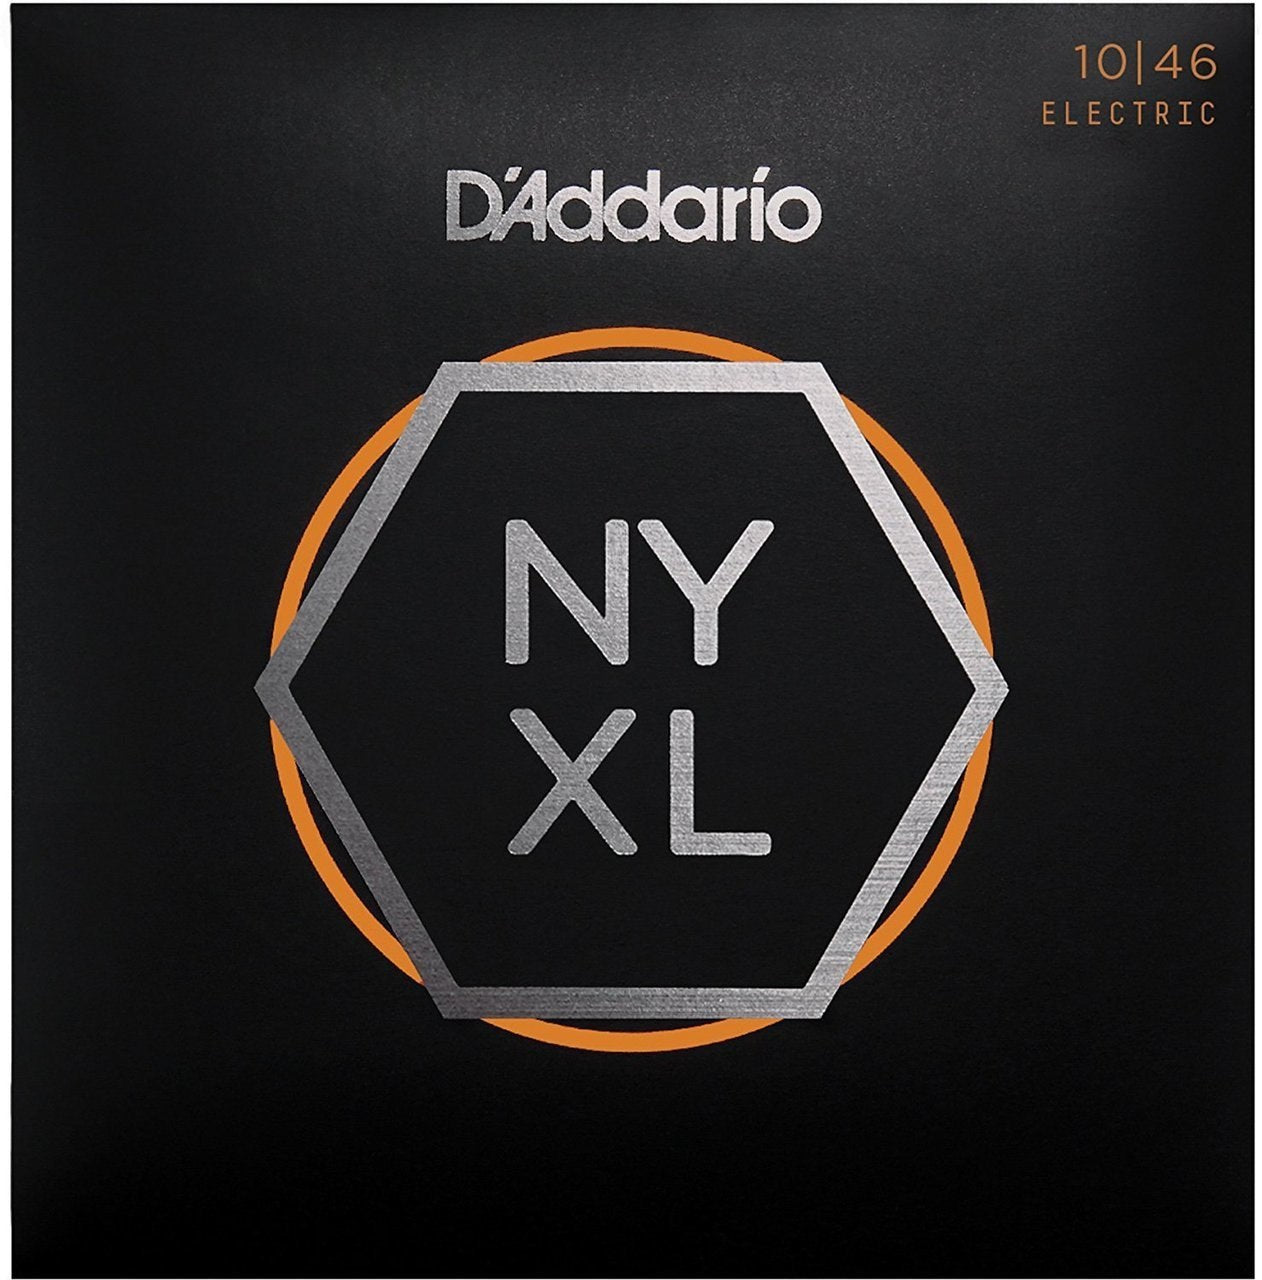 D'Addario NYXL 10-46 Electric Guitar String Set